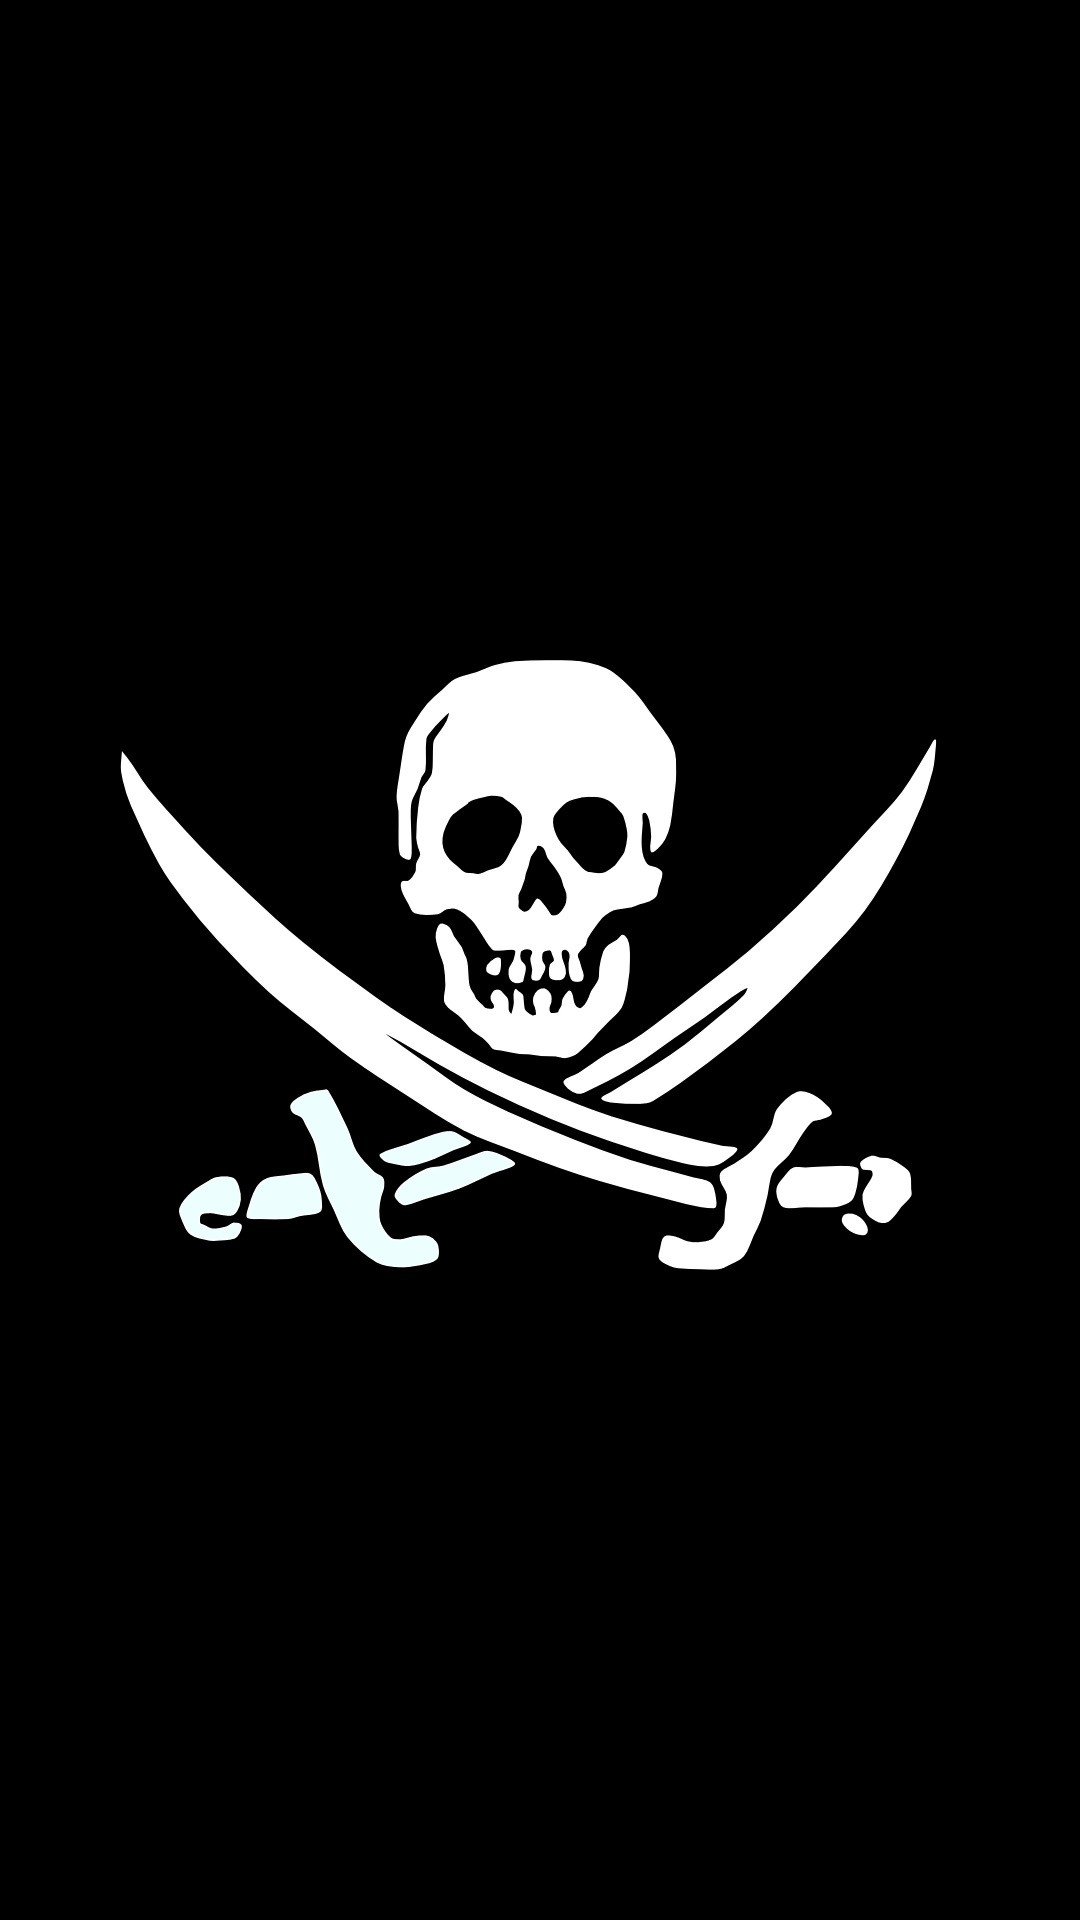 1080x1920 Jolly roger pirate skull black and white iphone plus wallpaper jpg   Black skull iphone wallpaper